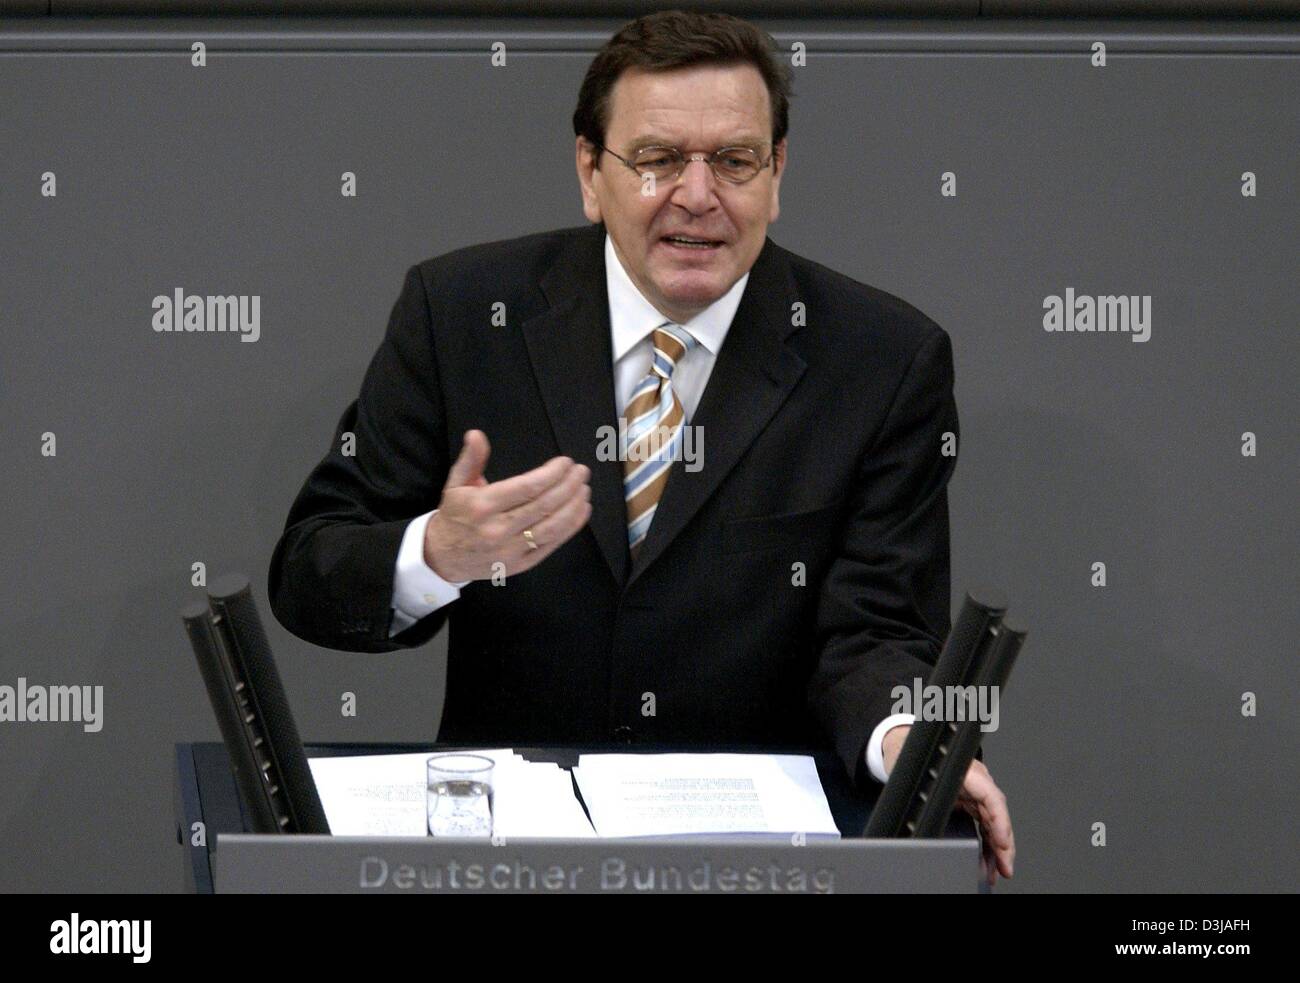 (Dpa) - Bundeskanzler Gerhard Schroeder hält eine Rede im Bundestag, das Unterhaus des Parlaments, in Berlin, auf Donnerstag, 25. März 2004. Schröder behauptet, dass die Wirtschaft jetzt auf dem Weg zur Erholung während deutschen greifen waren, dass Reformen notwendig, die Position des Landes zu verbessern. Seine Rede begann am Tag der Debatte über Berlins Reformpläne und Performance Stockfoto